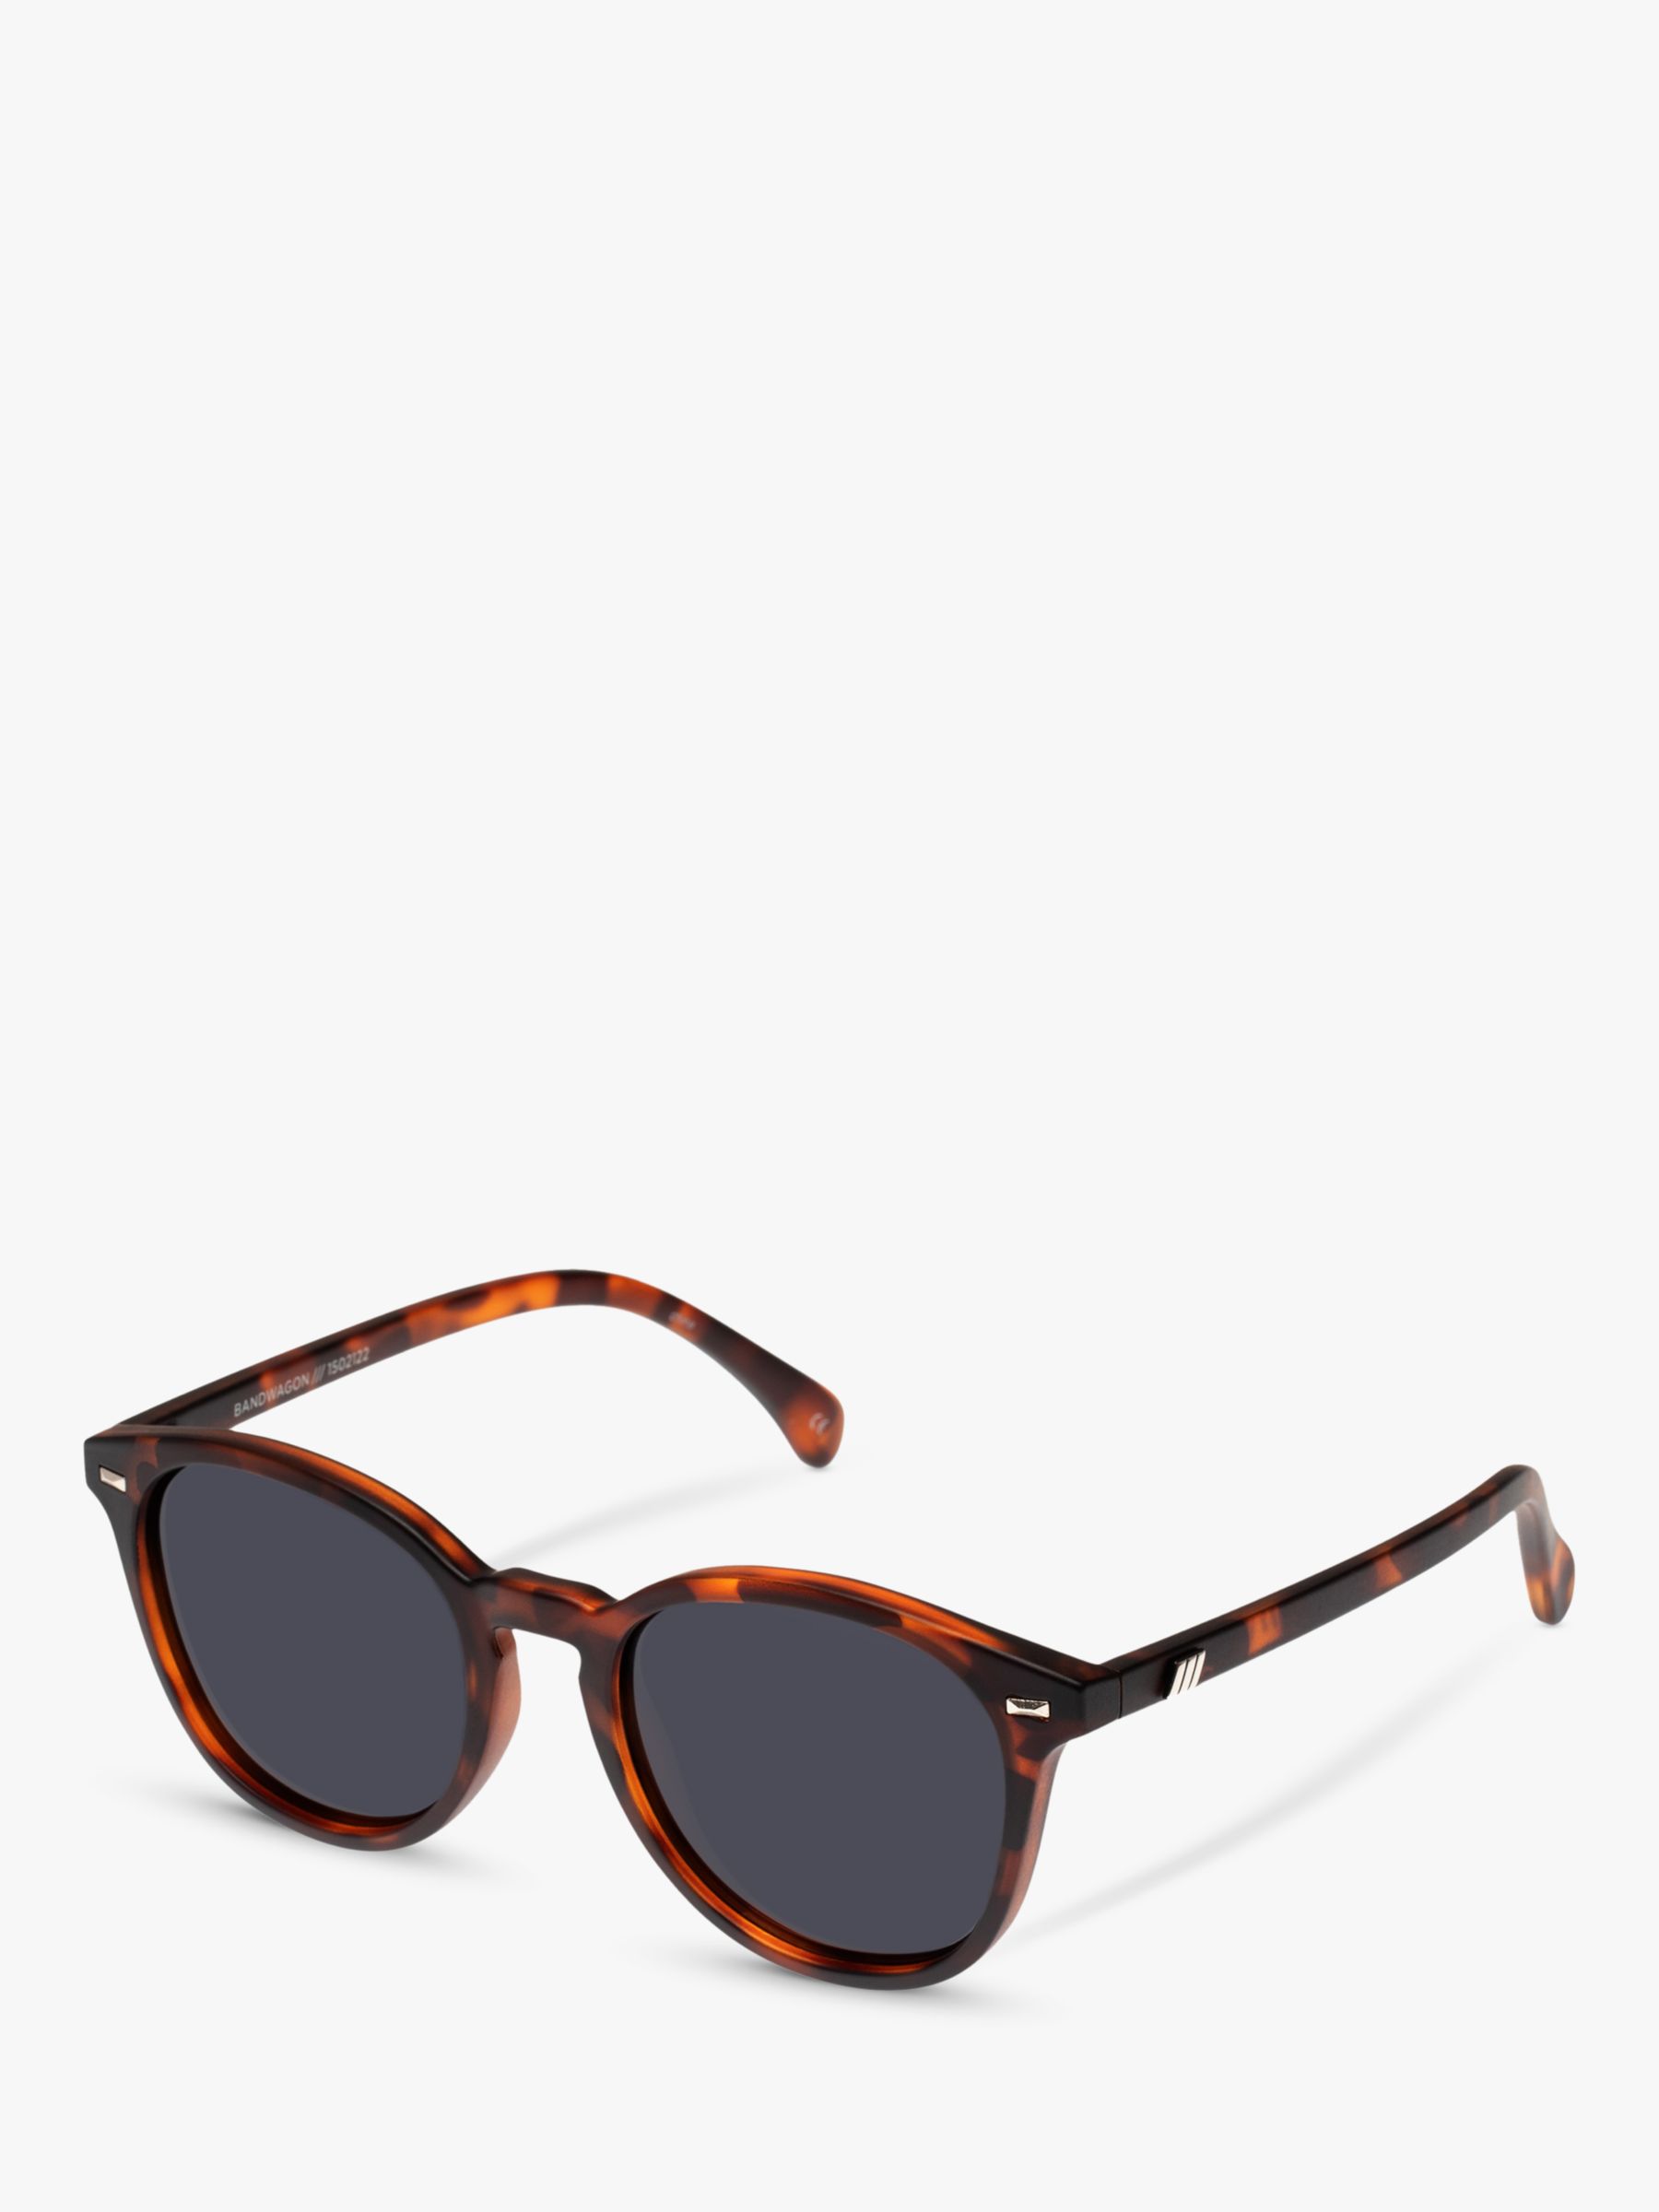 L5000144 Круглые поляризованные солнцезащитные очки унисекс Bandwagon Le Specs, черепаховый/черный